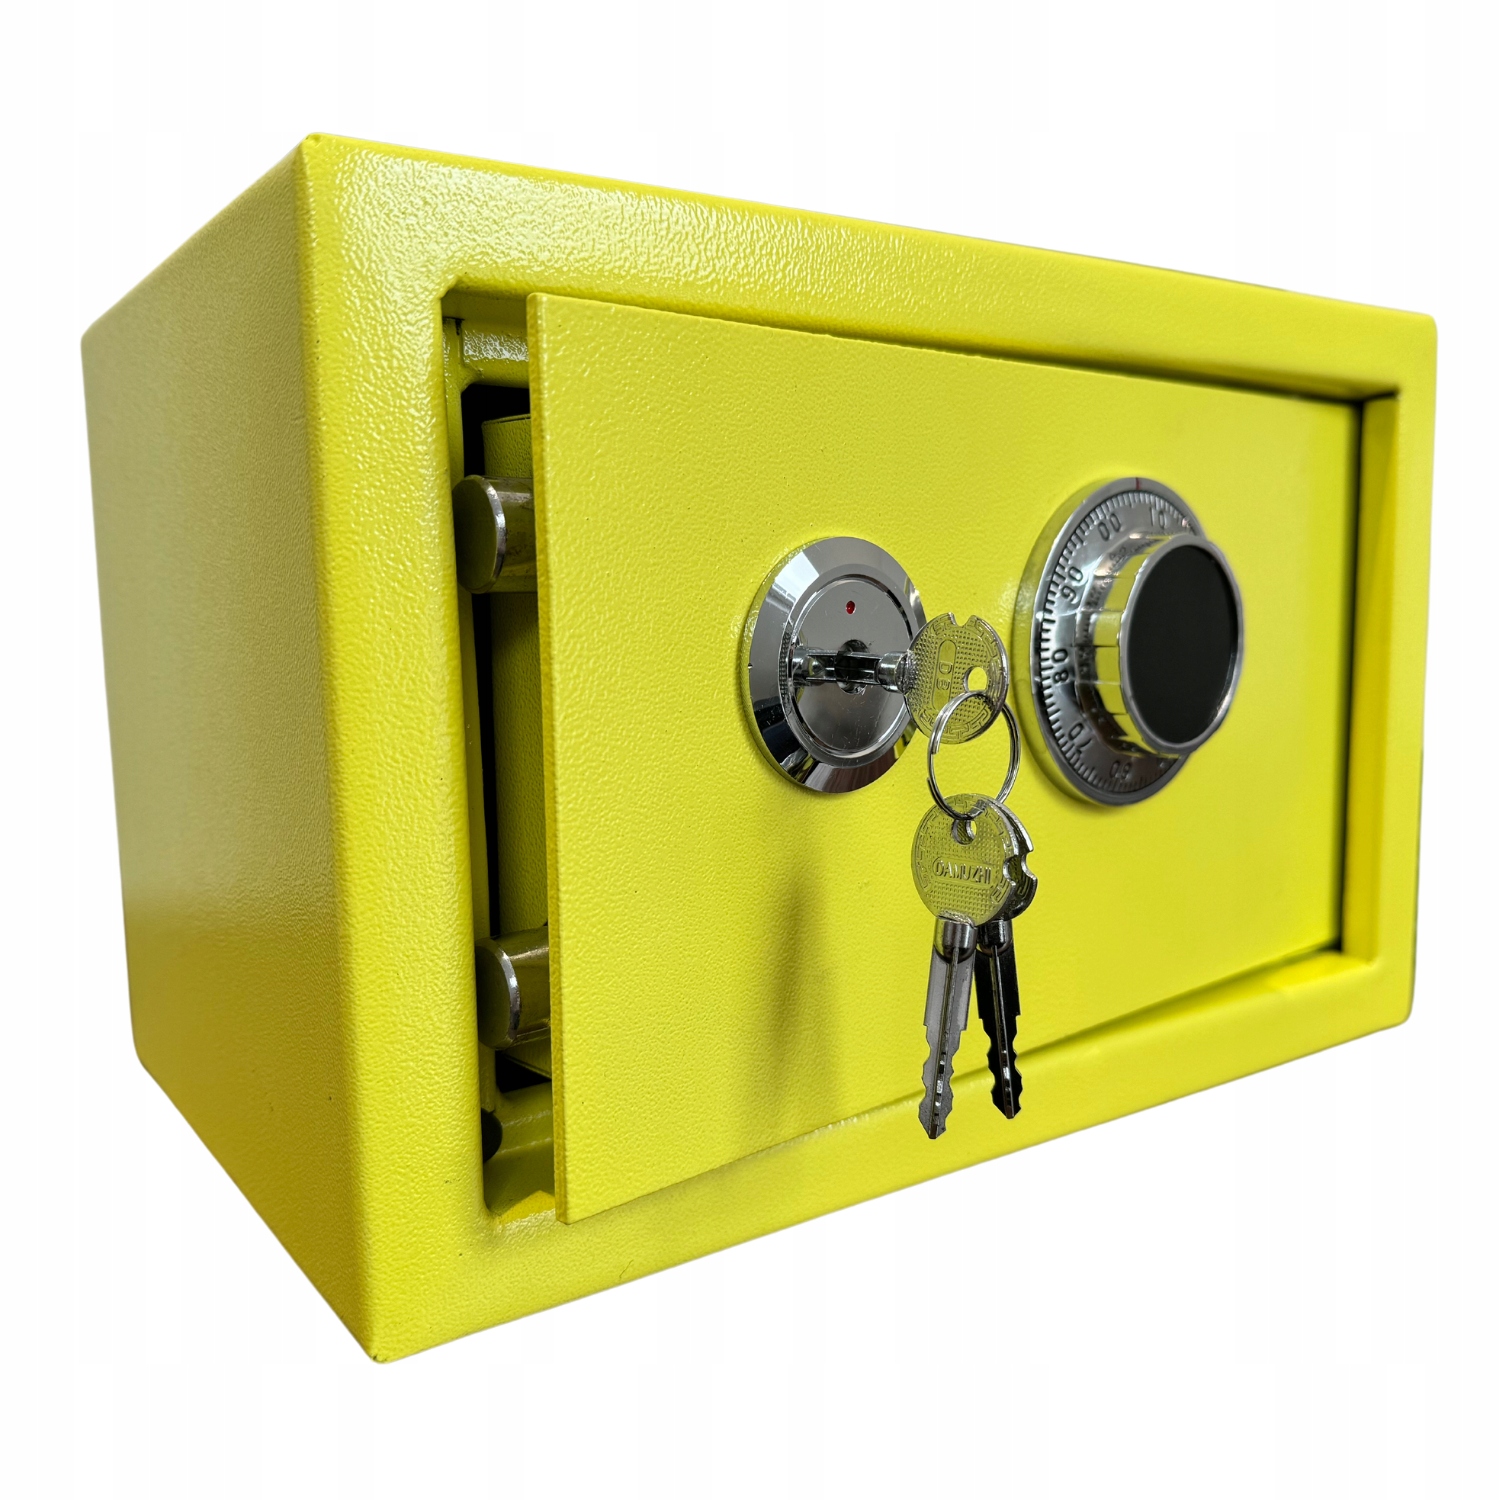 Zdjęcia - Sejf  domowy szyfrowy mechaniczny skrytka kasetka żółty stylowy design